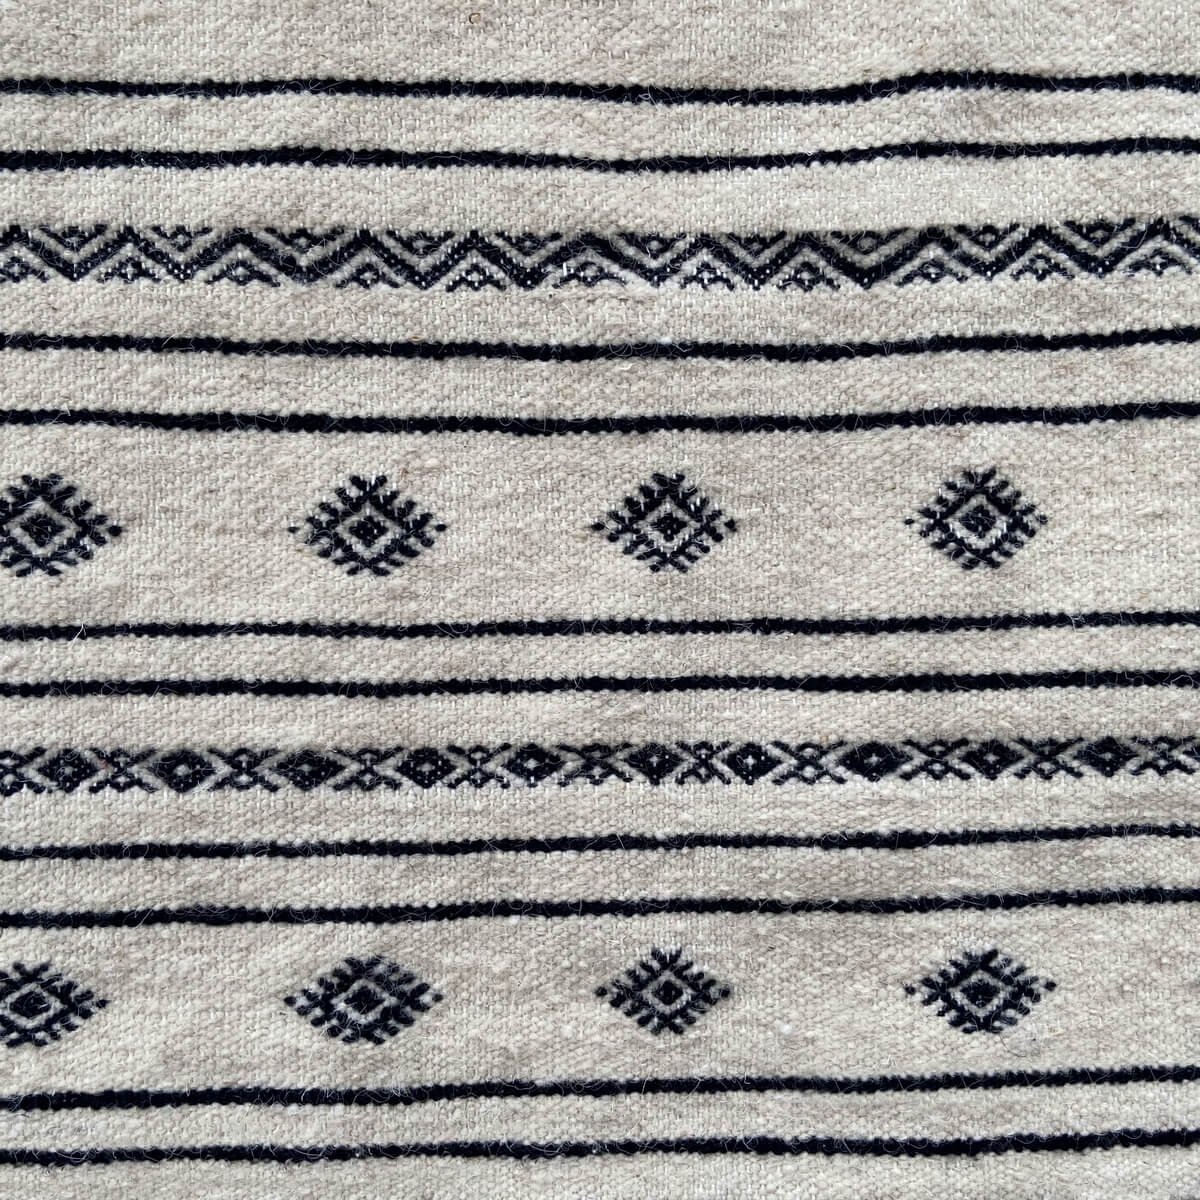 Berber tapijt Tapijt Kilim Abez 60x104 cm Zwart en Wit (Handgeweven, Wol, Tunesië) Tunesisch kilimdeken, Marokkaanse stijl. Rech